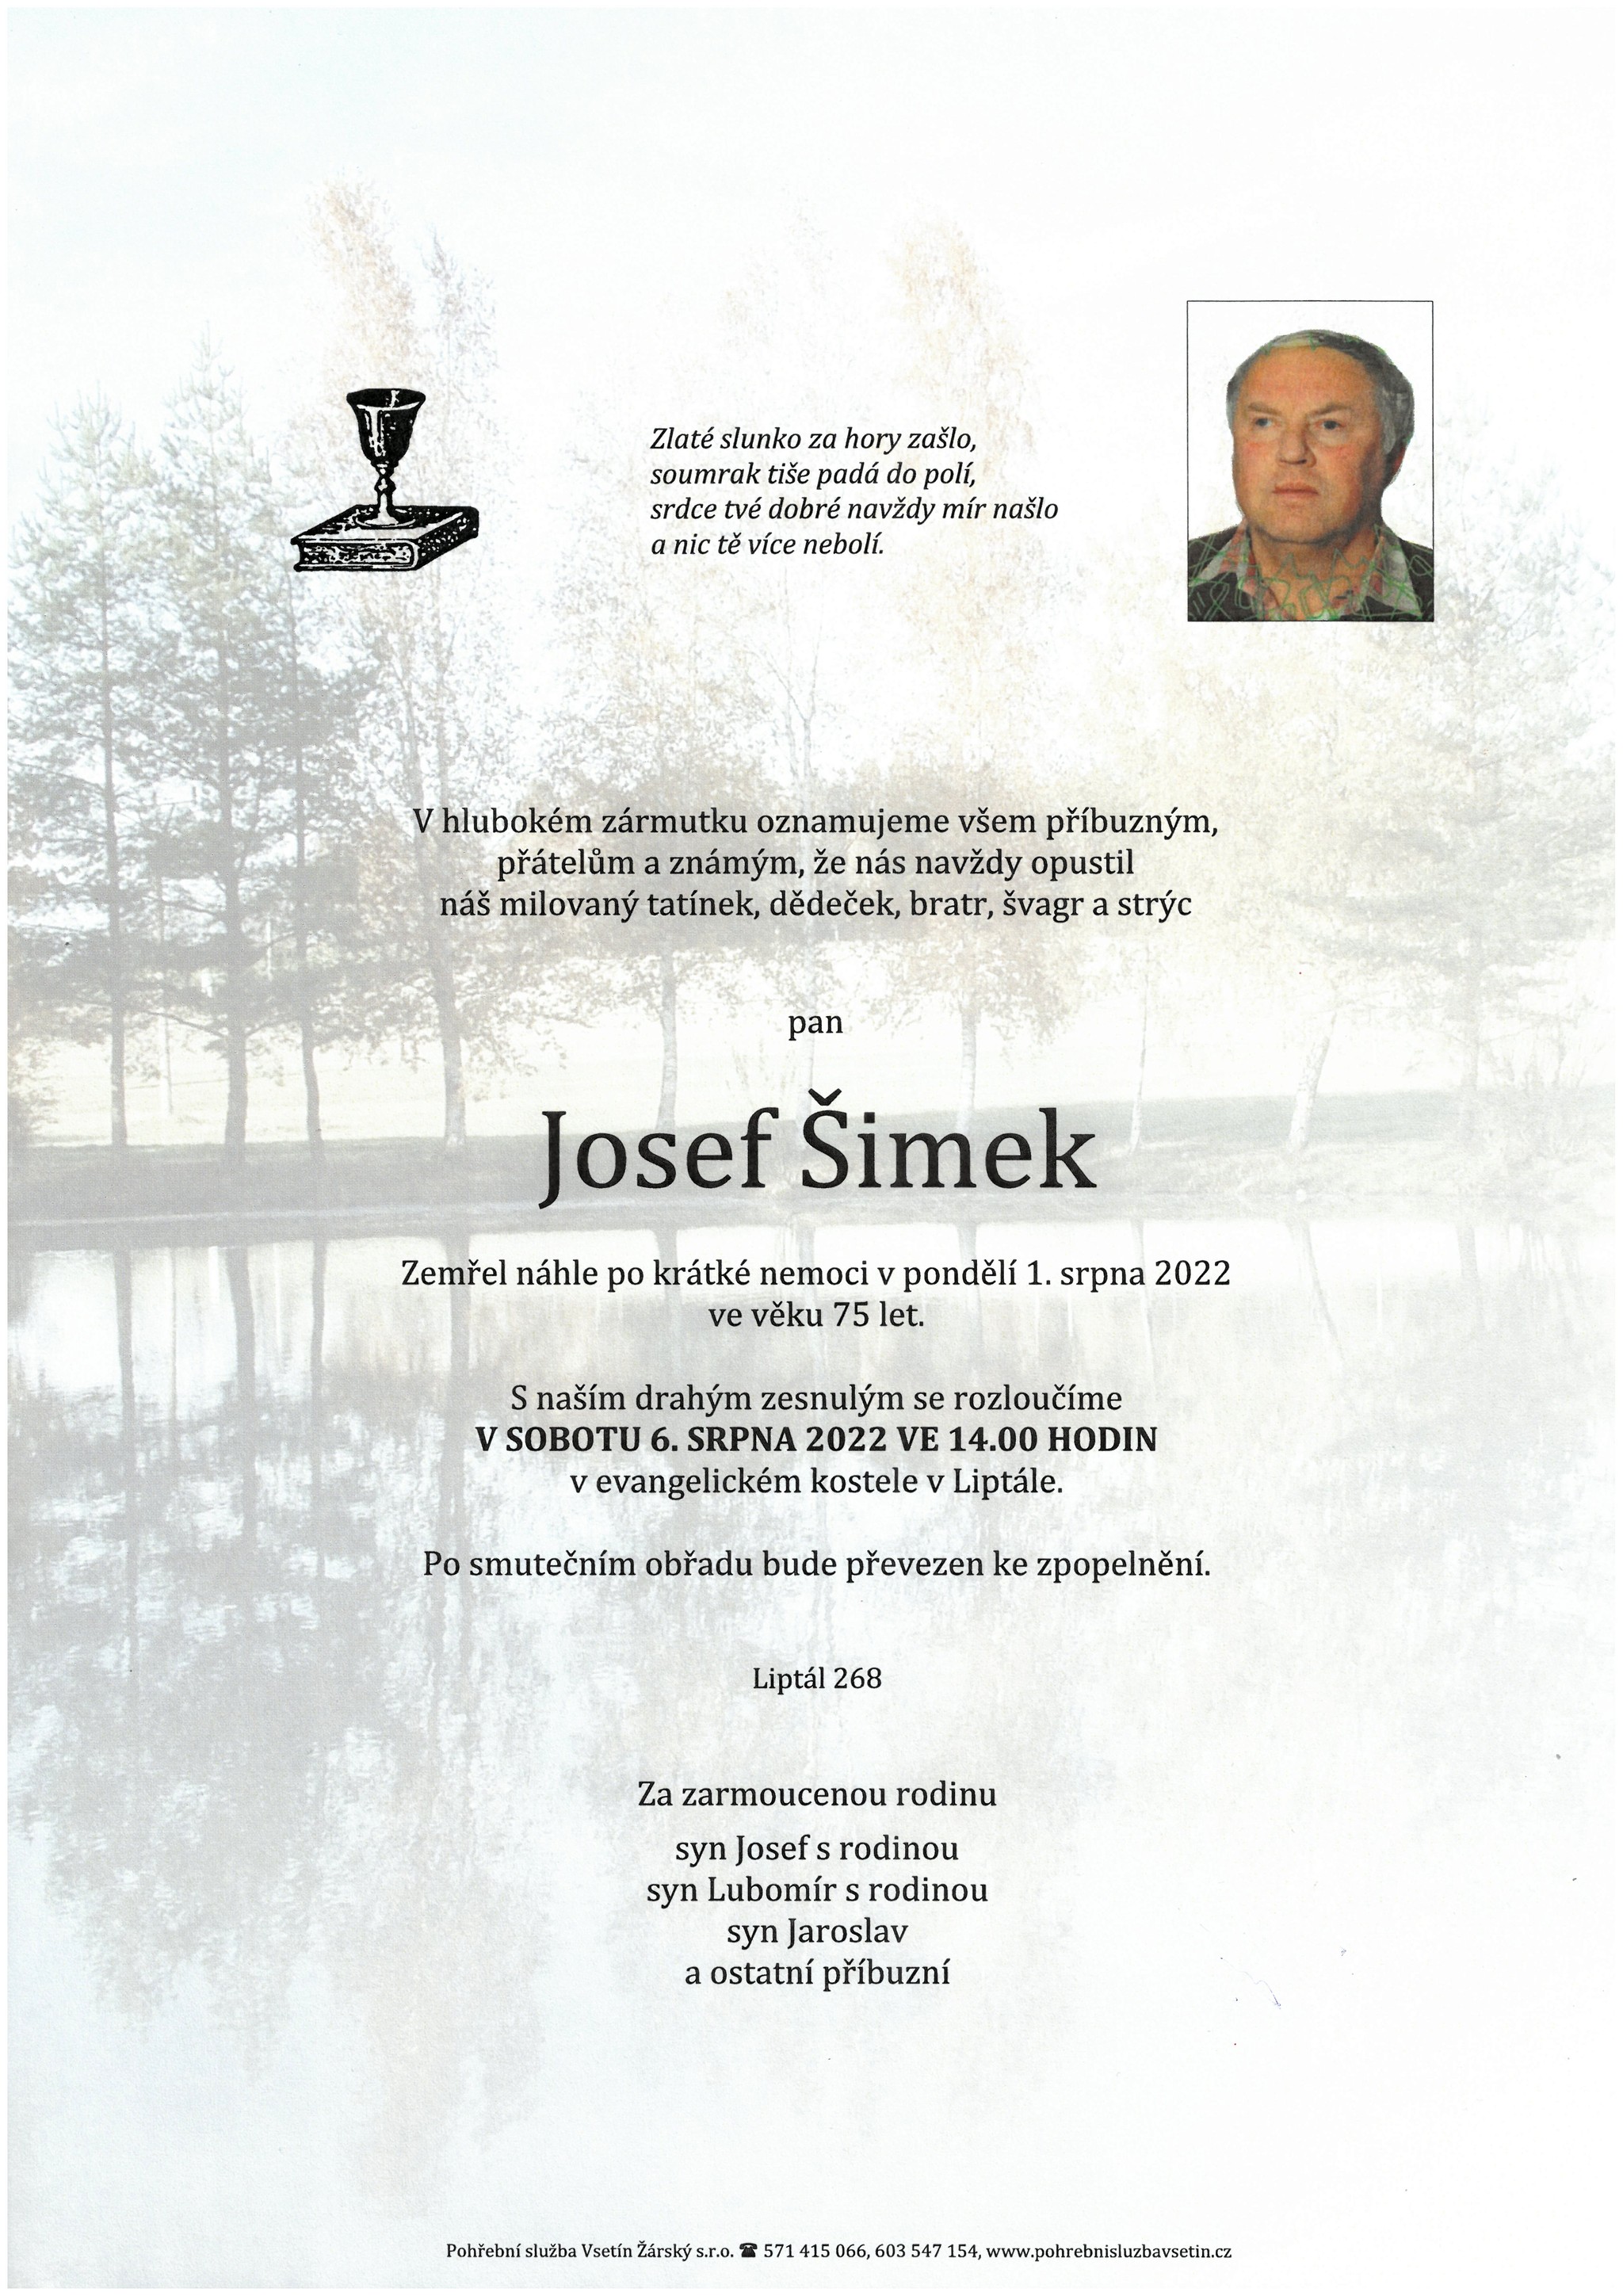 Josef Šimek